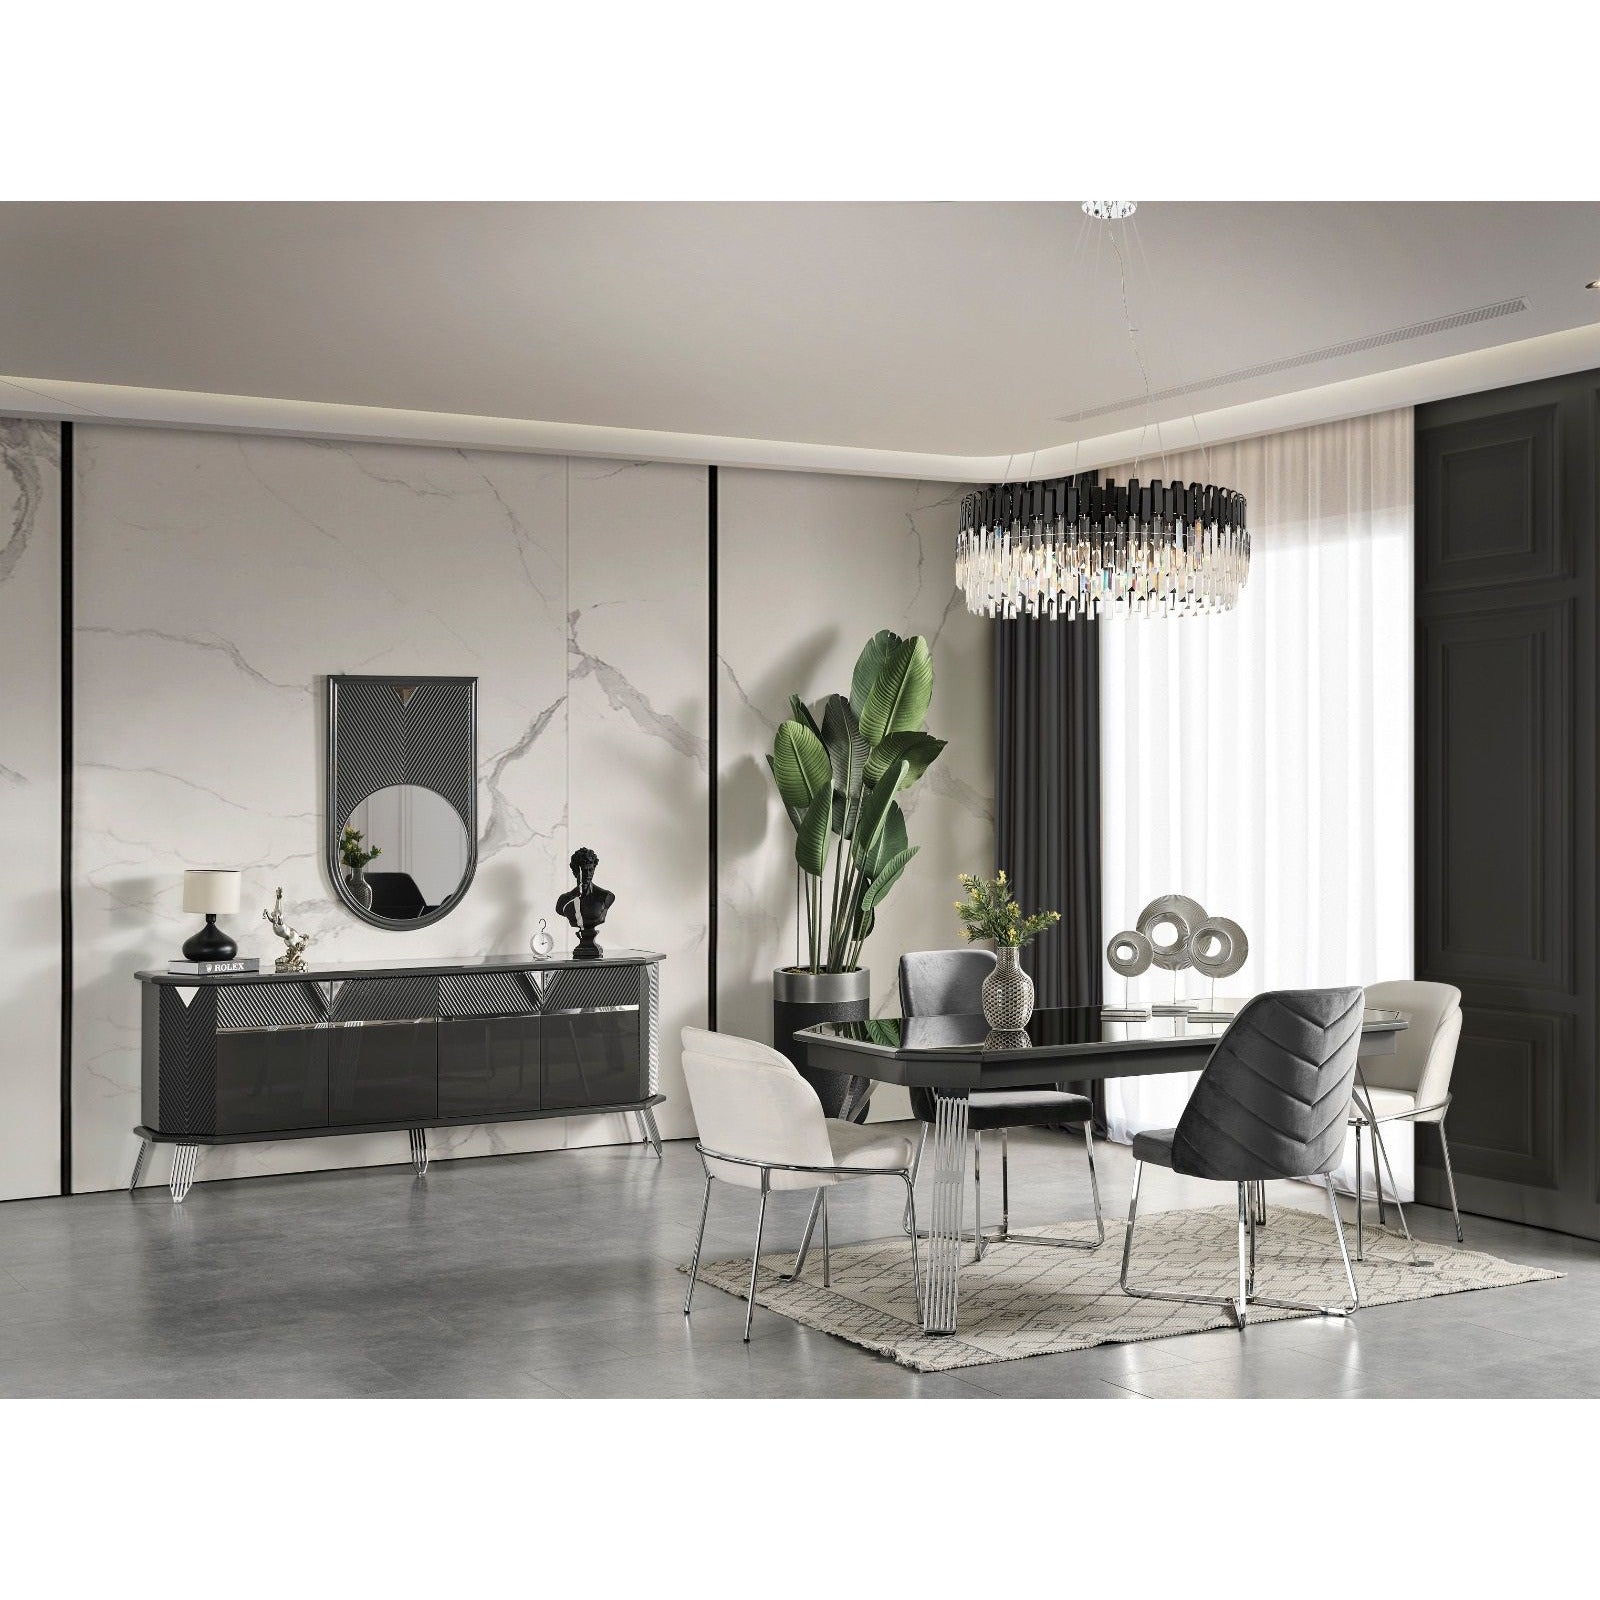 Madrid Skänk - LINE Furniture Group